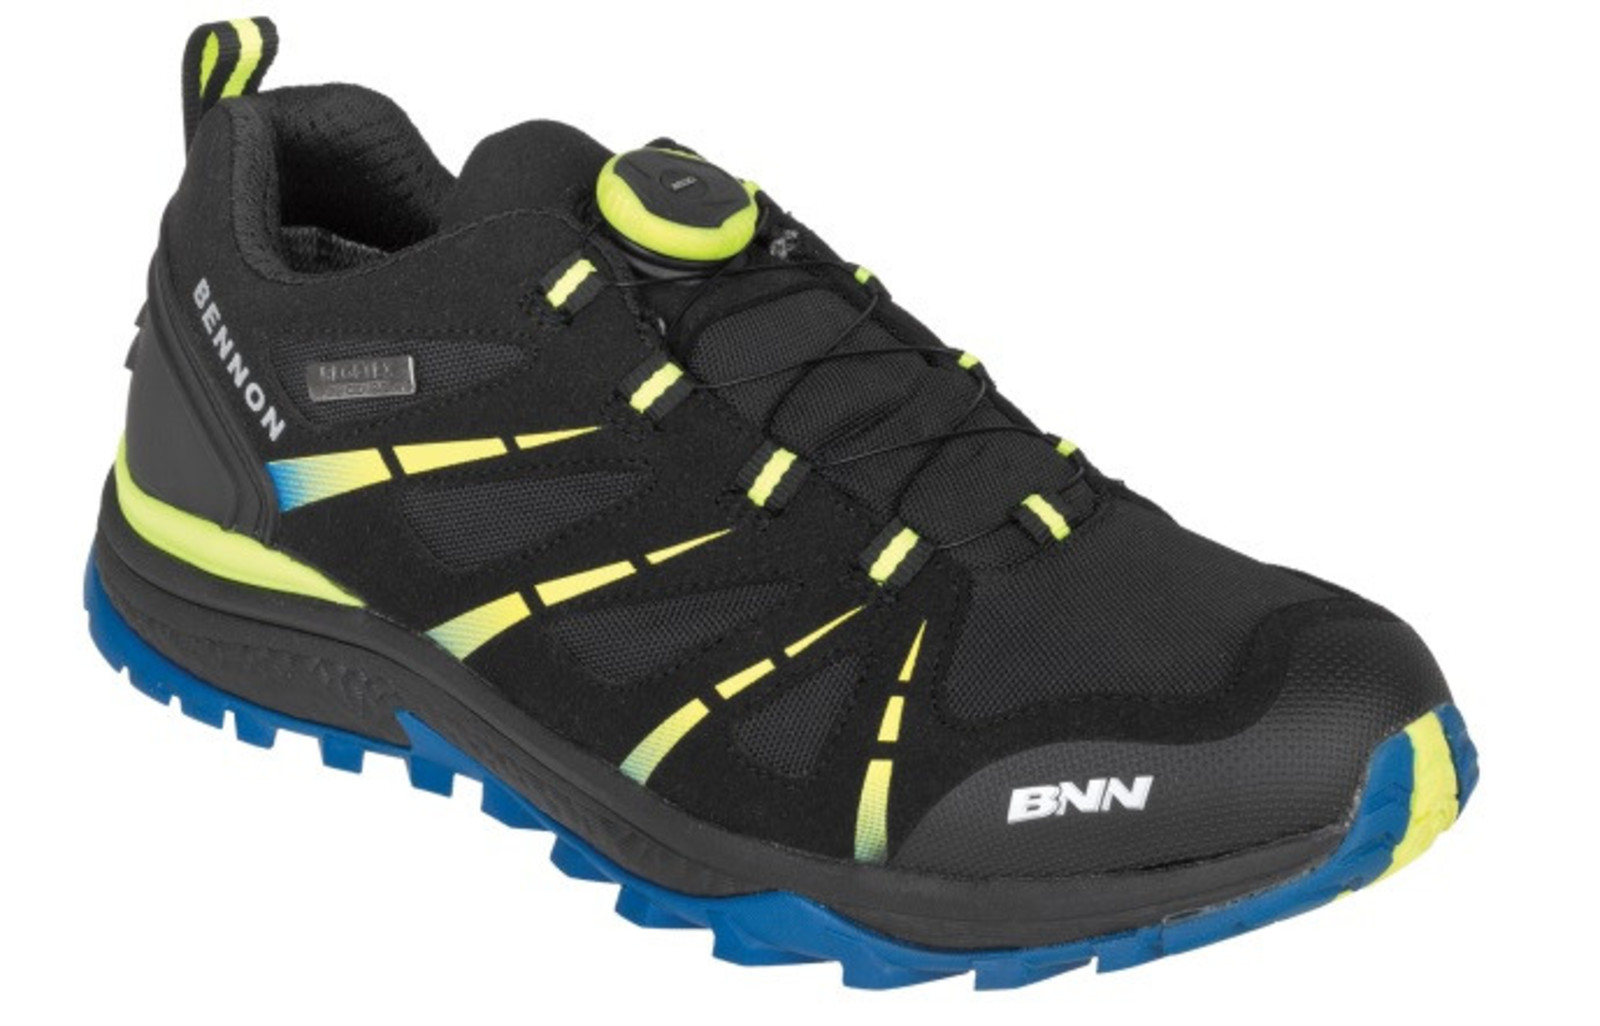 Voľnočasové topánky Bennon Sonix Atop - veľkosť: 36, farba: modrá/čierna